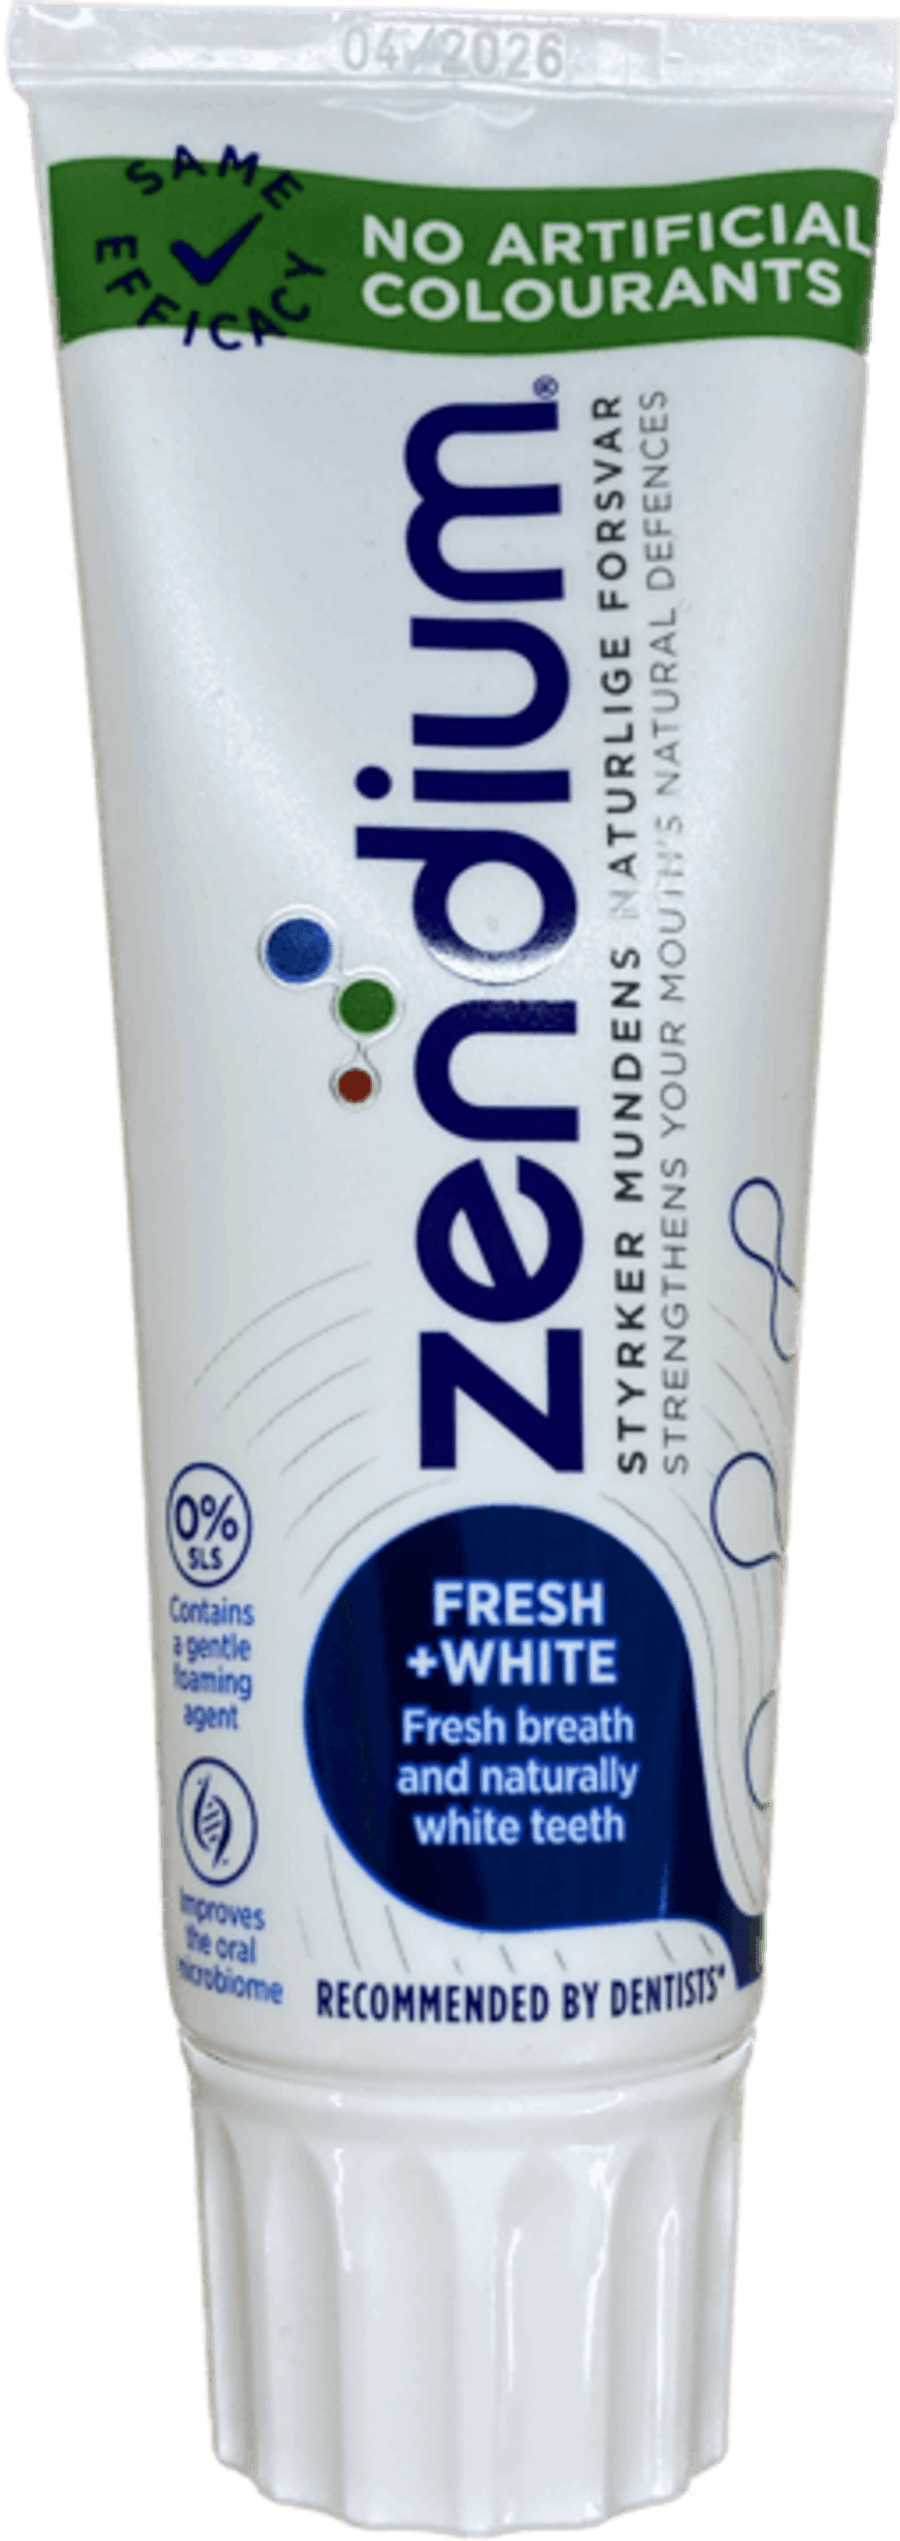 Zendium whitening 75 ml